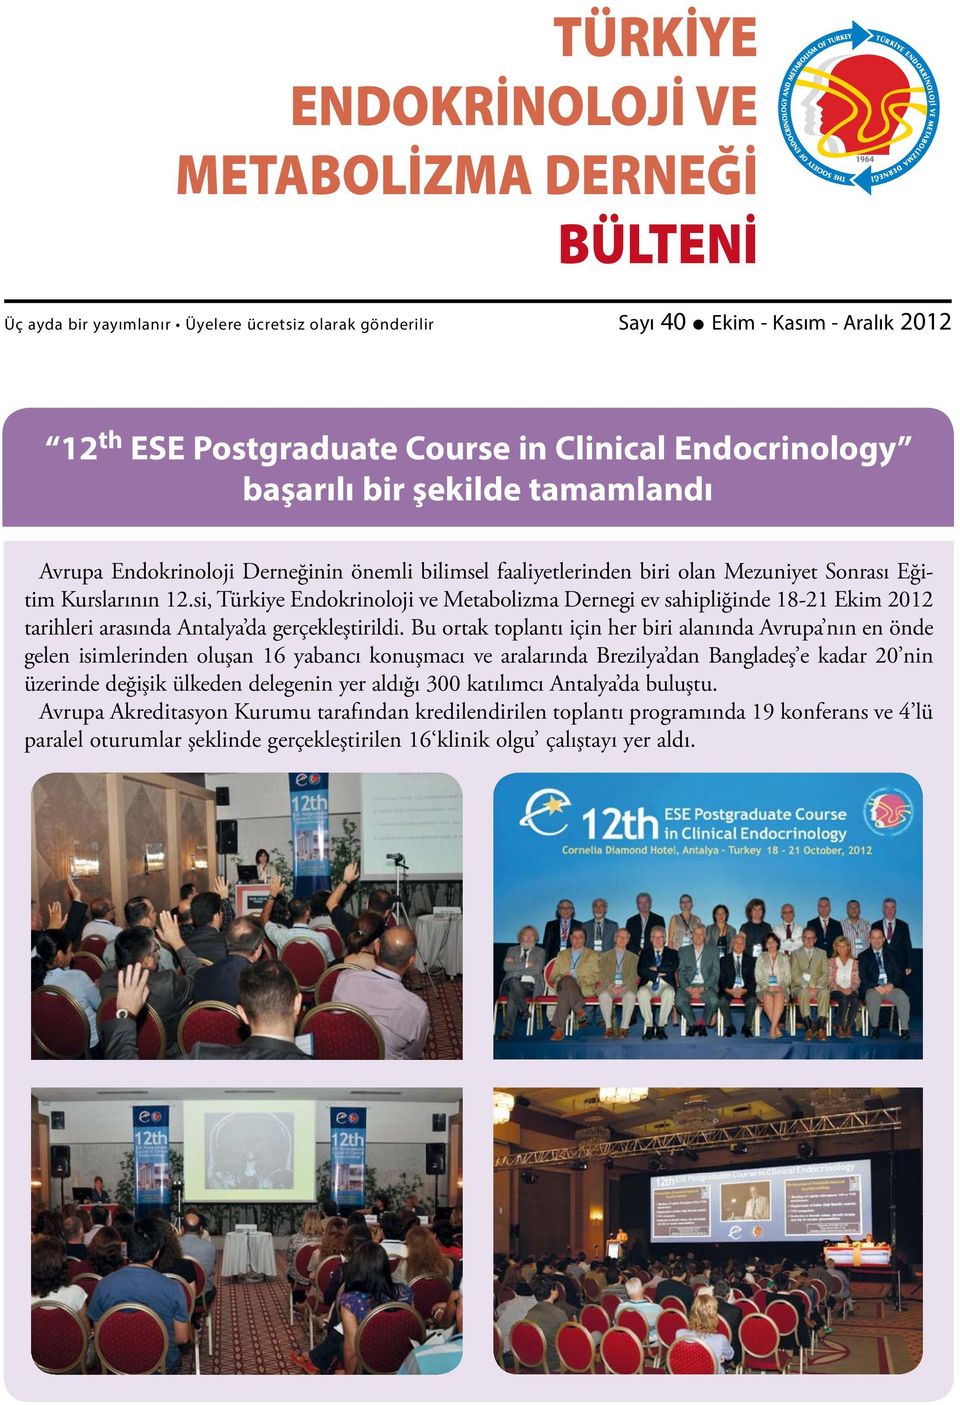 si, Türkiye Endokrinoloji ve Metabolizma Dernegi ev sahipliğinde 18-21 Ekim 2012 tarihleri arasında Antalya da gerçekleştirildi.